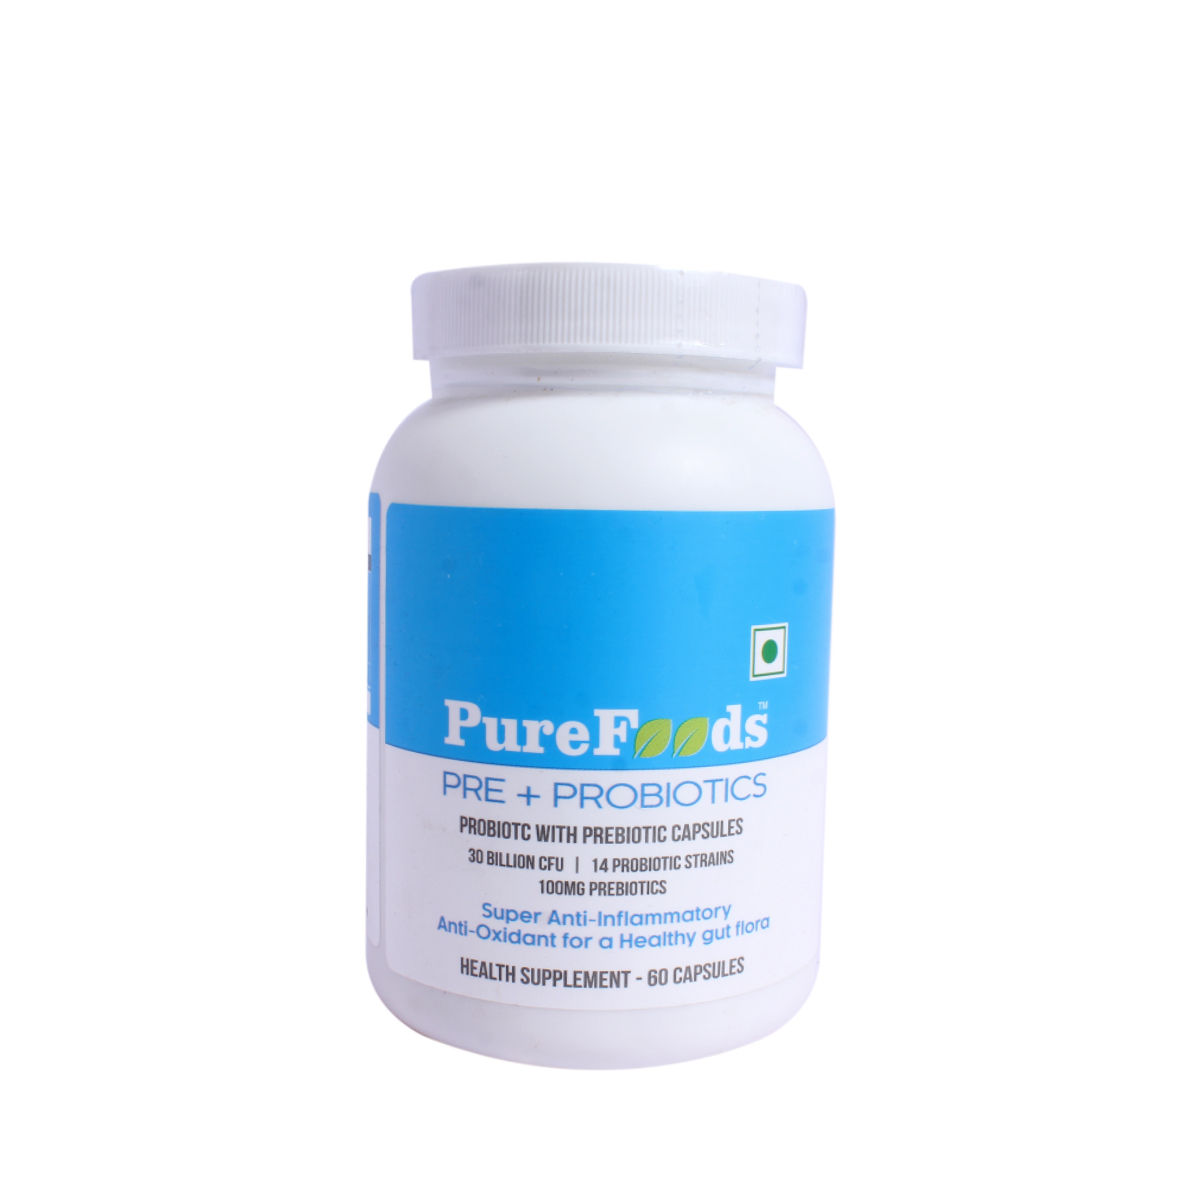 PureFoods Prebiotic + Probiotic, 60 Capsules, Pack of 1 